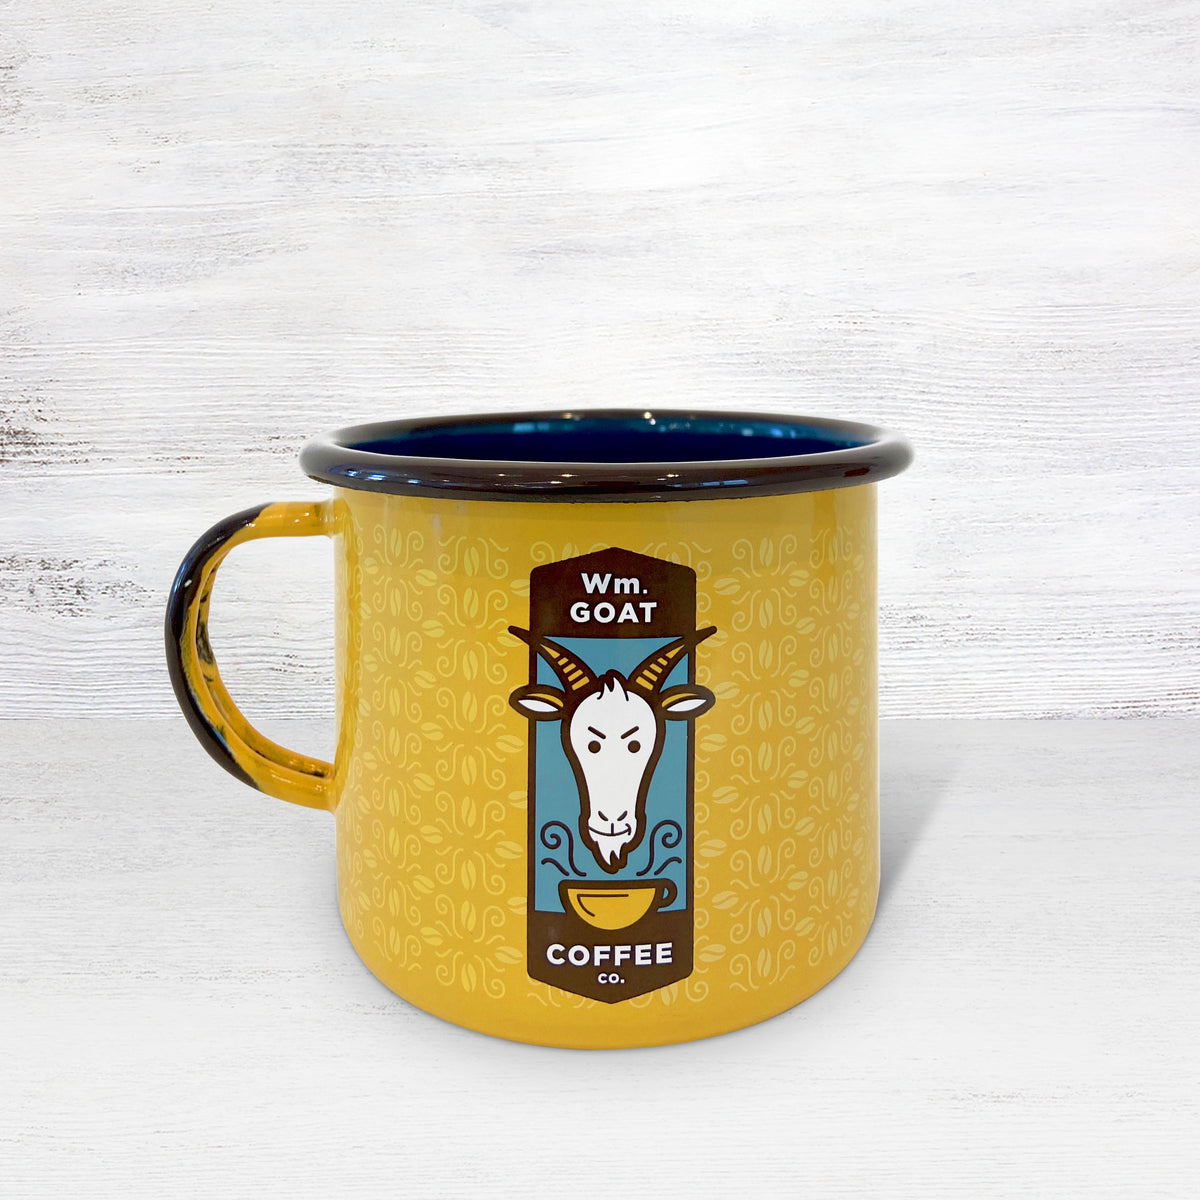 WM. Goat Coffee Enamelware Mug